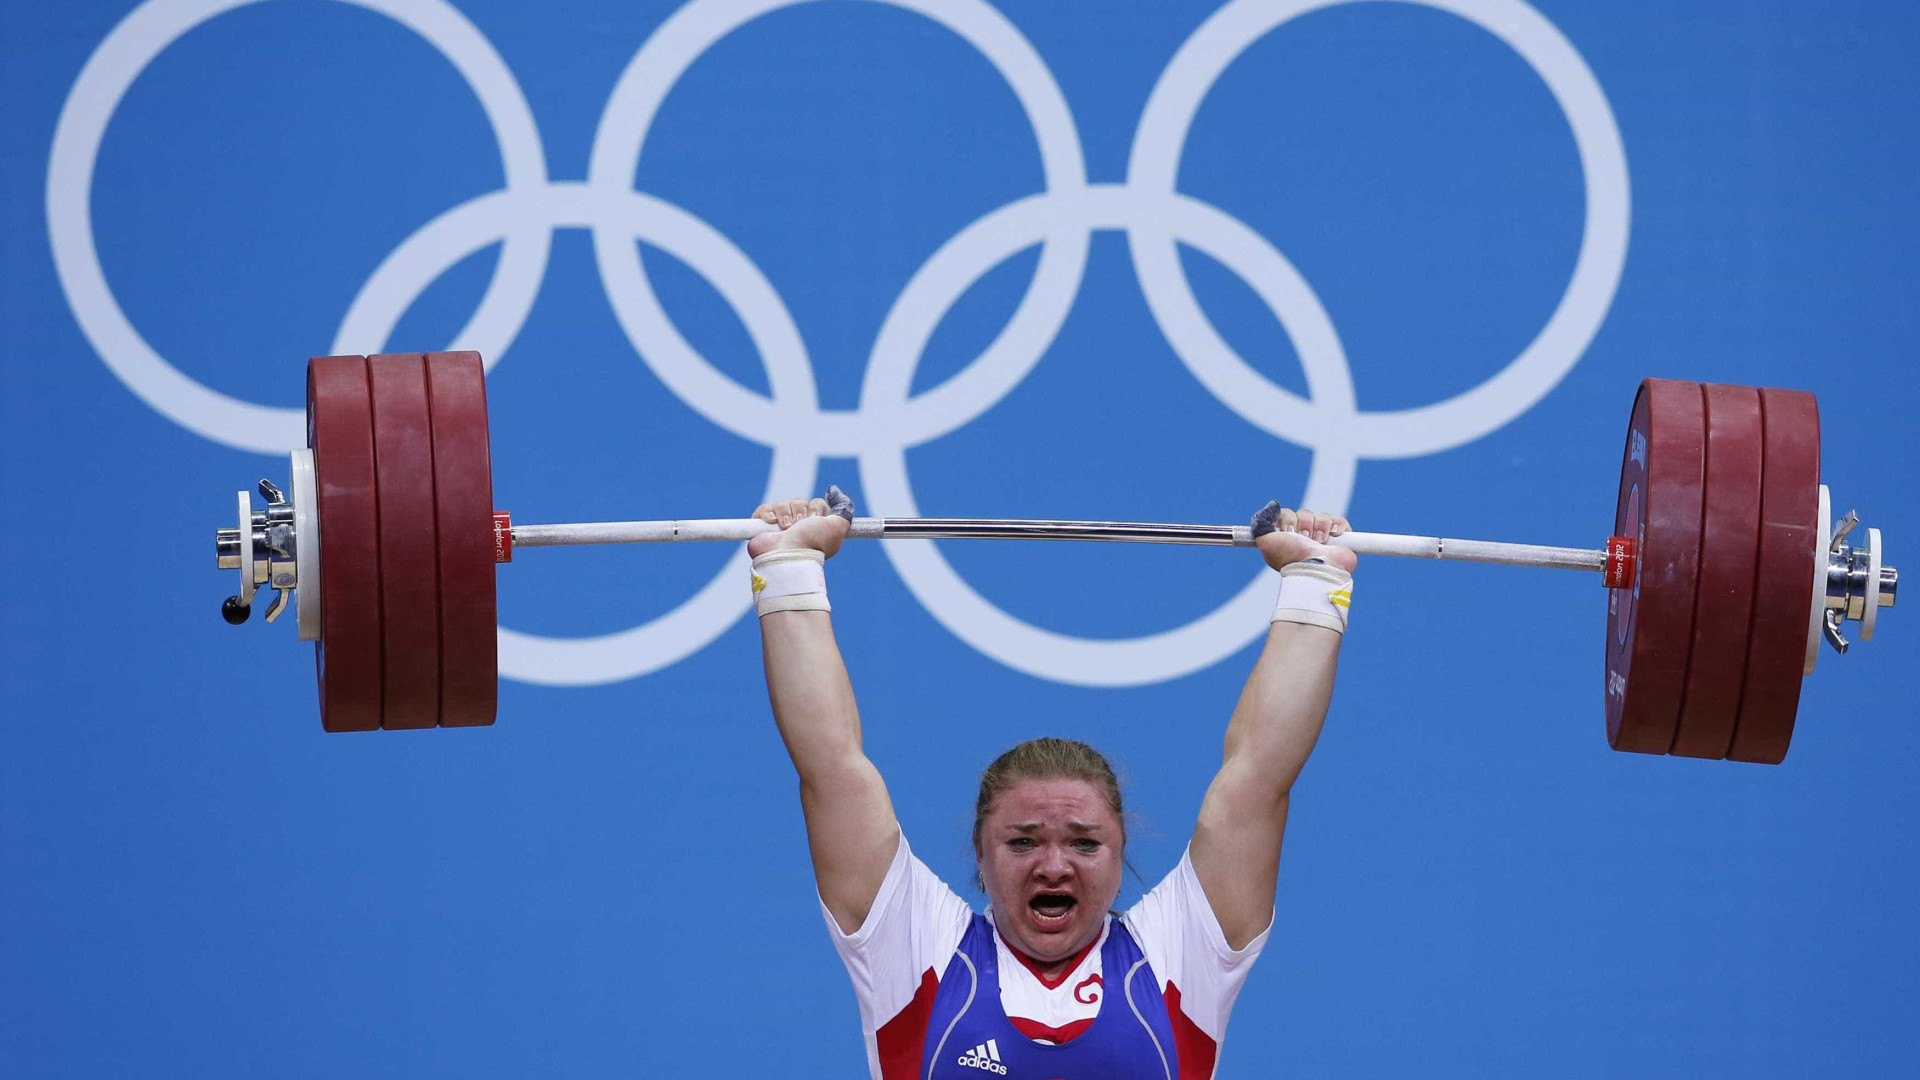 Por doping, 8 levantadores de peso 
russos são excluídos da Rio-2016